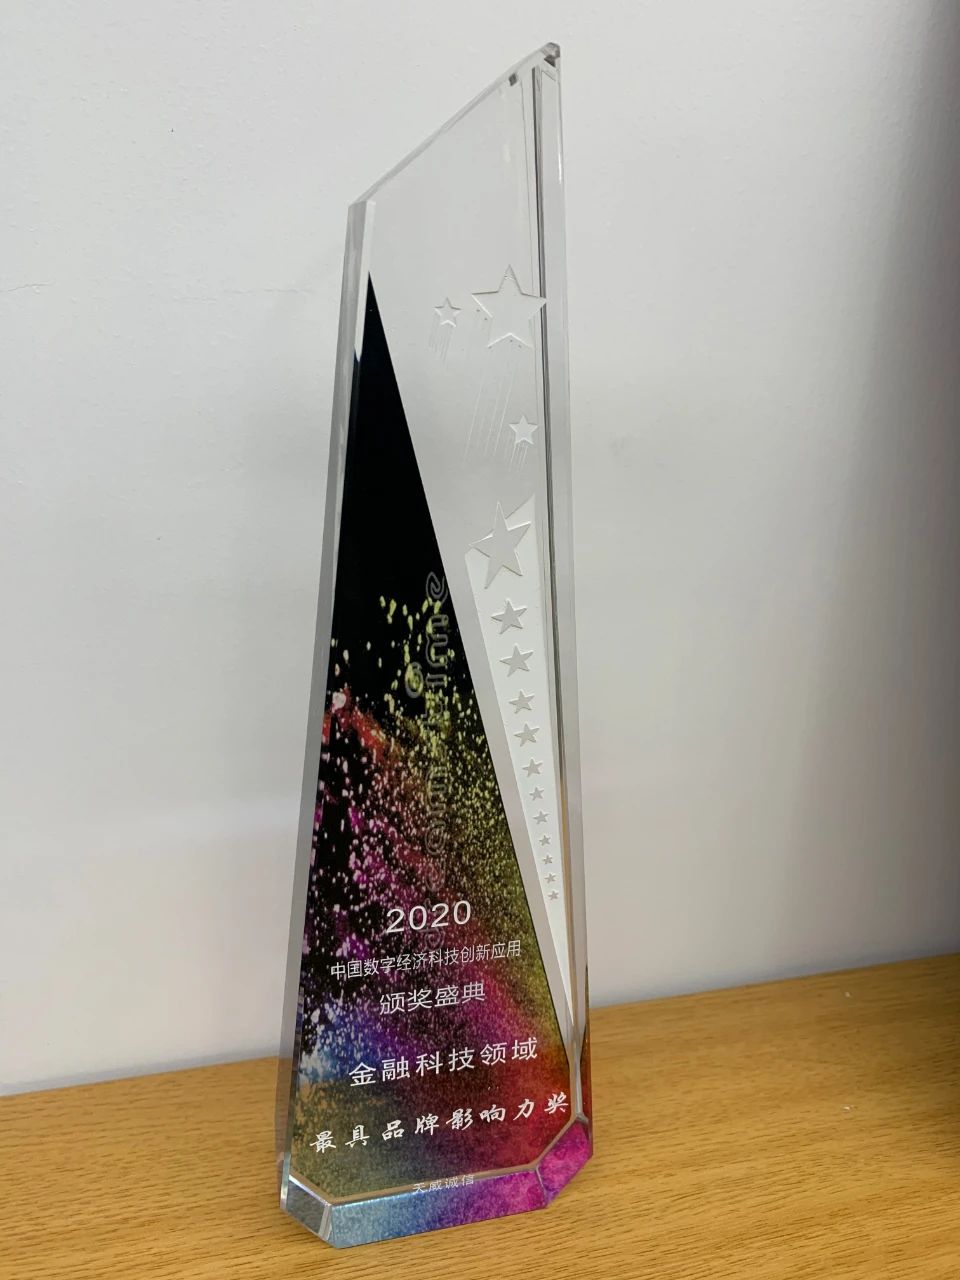 天威诚信荣获「金融科技领域最具品牌影响力奖」